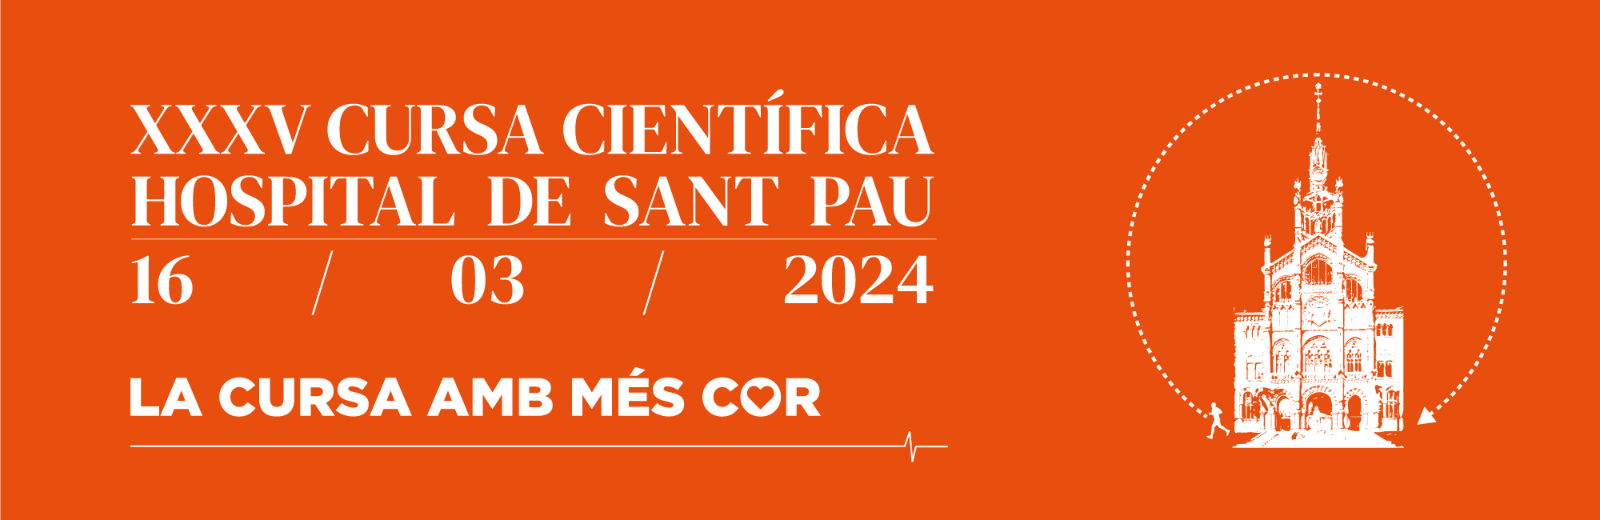 Sant Pau Cursa Científica 2024